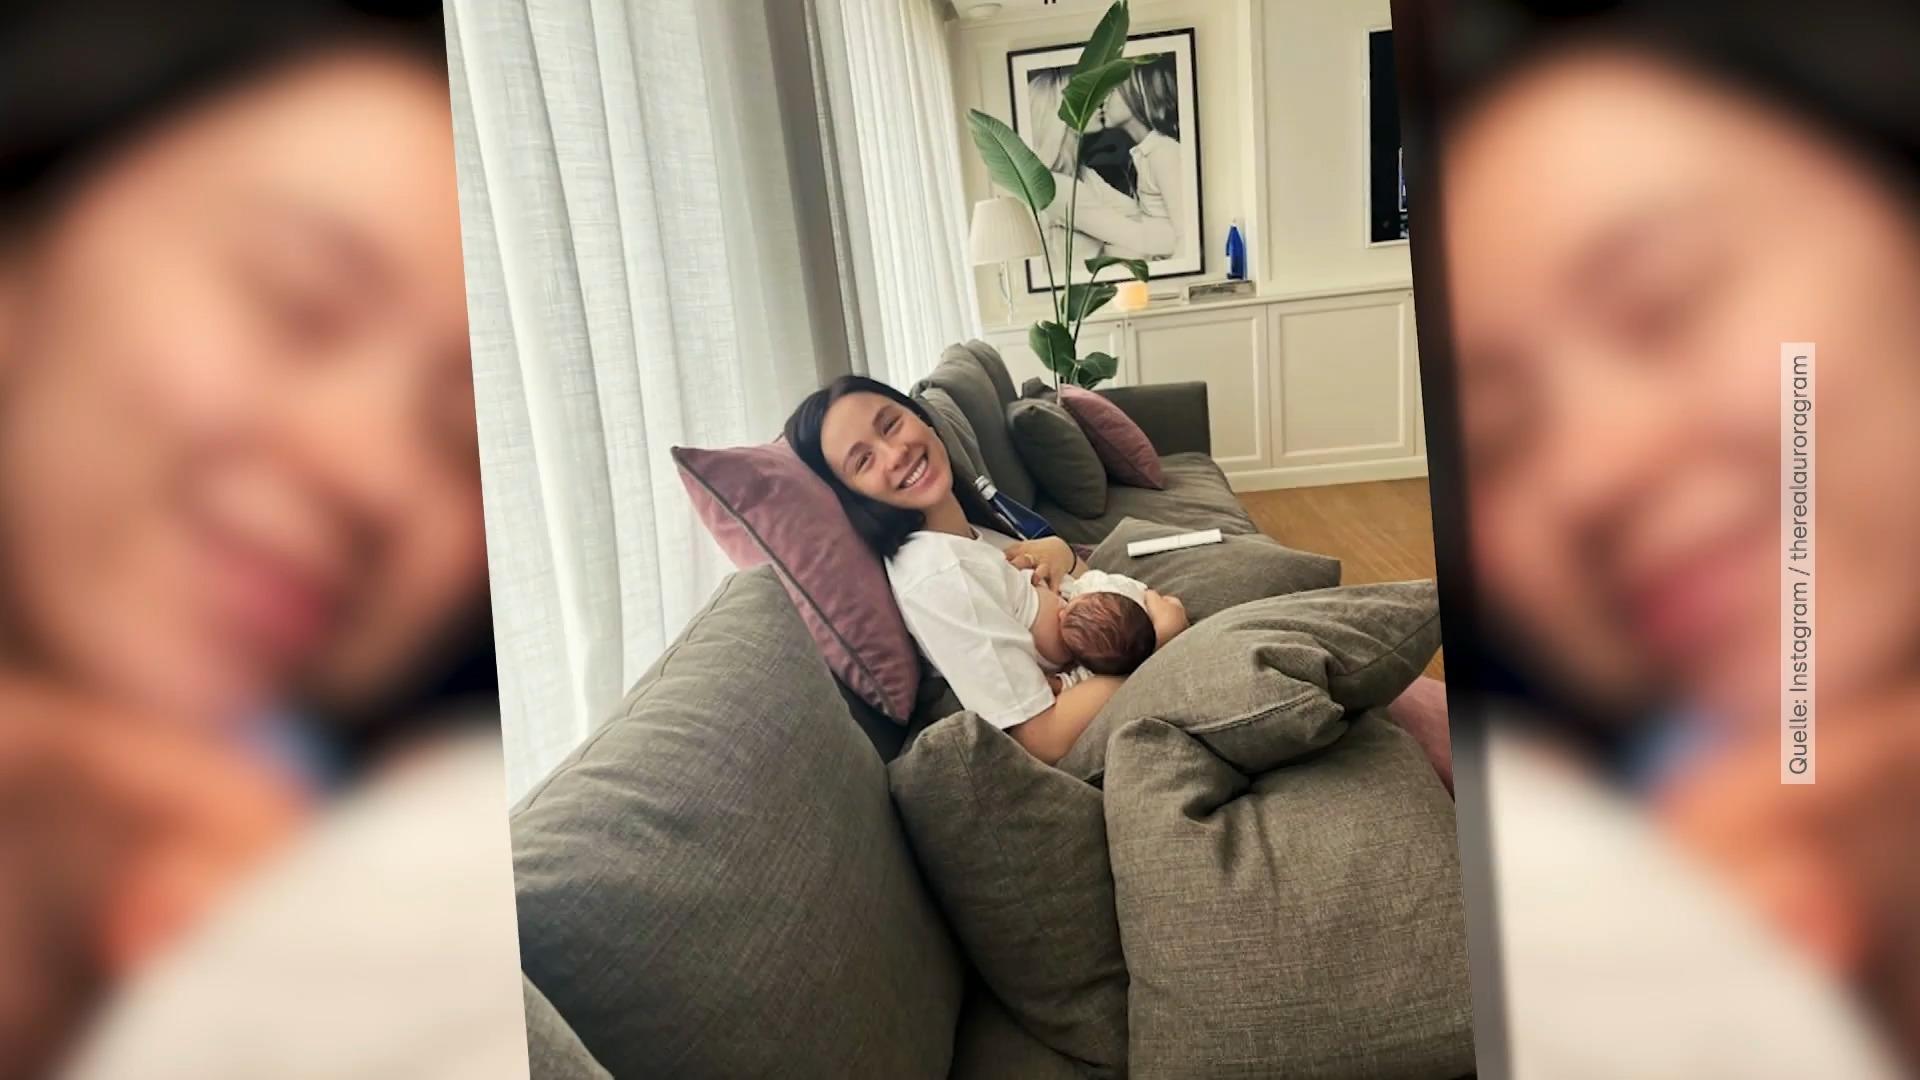 Aurora Ramazzotti teilt erste Fotos mit ihrem Sohn Zwei Wochen nach Geburt